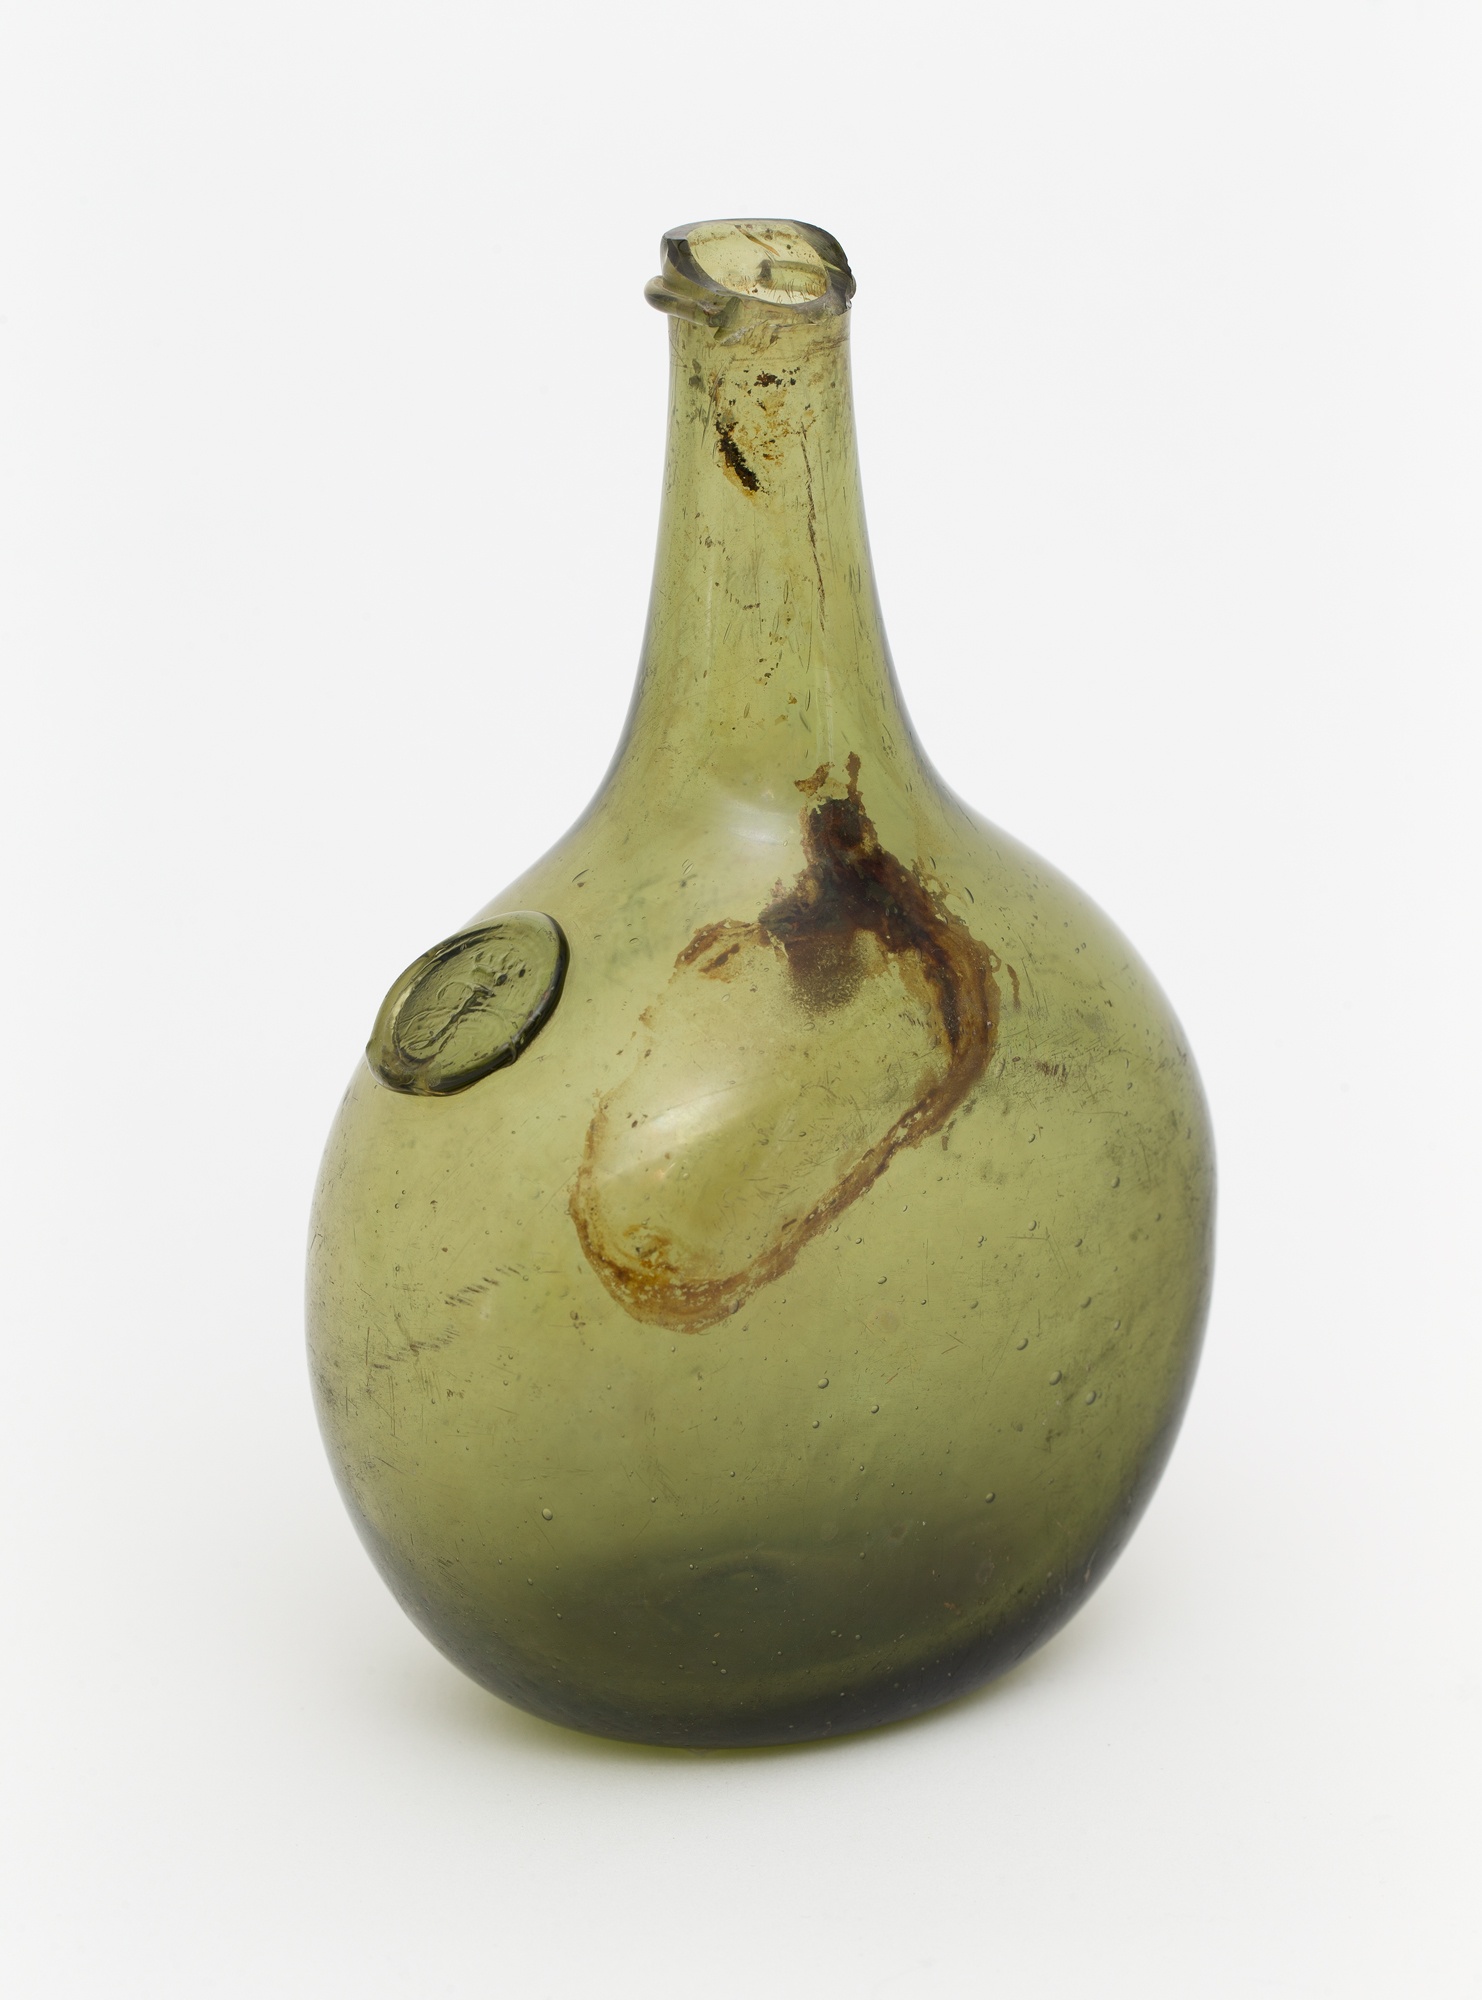 Flasche aus Waldglas mit Marke (Stiftung Stadtmuseum Berlin CC BY-NC-ND)